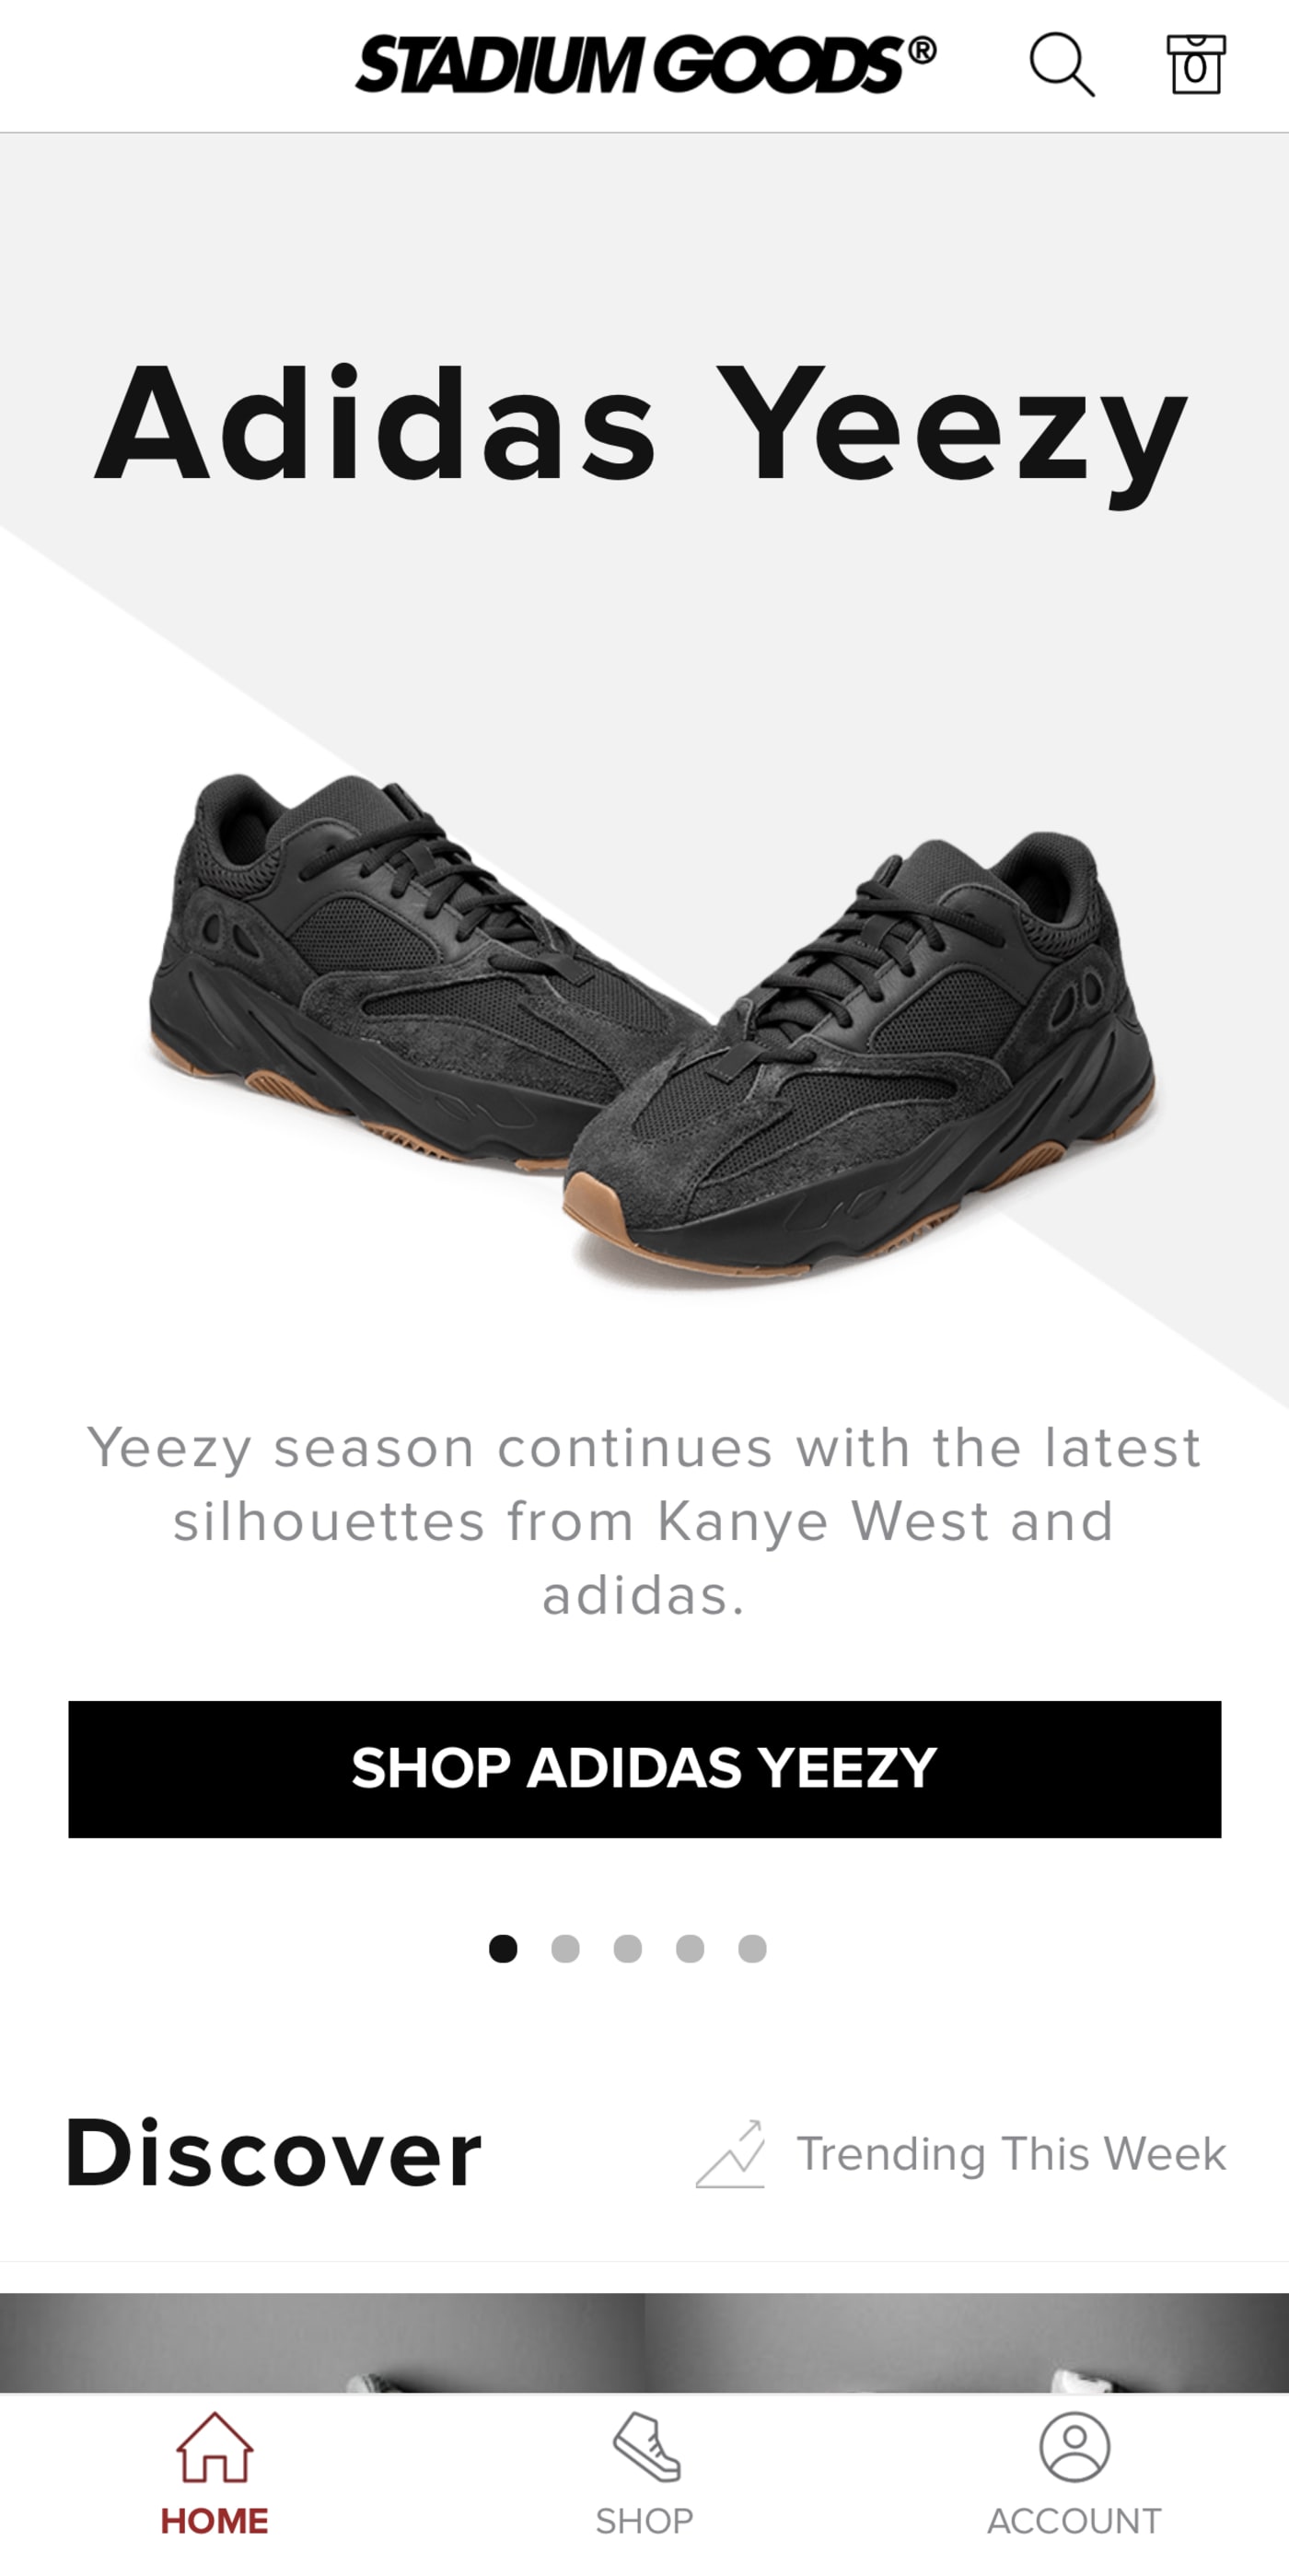 sneaker release websites